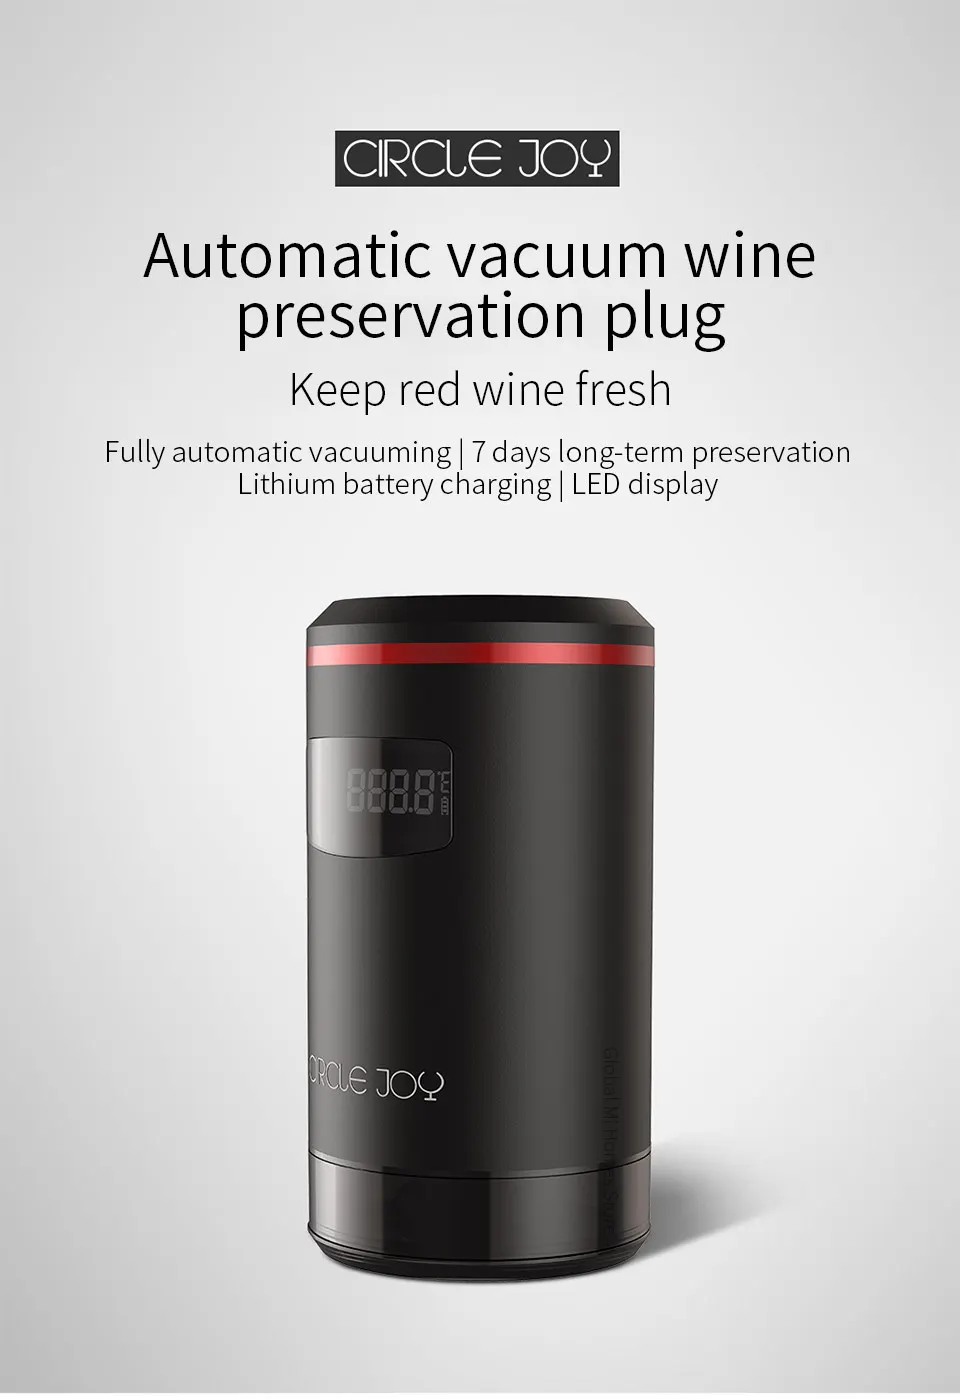 Xiaomi Mijia круг радость Yuanle интеллигентая(ый) Электрический вакуумный красное вино сохранение PlugEfficient и длительного хранения